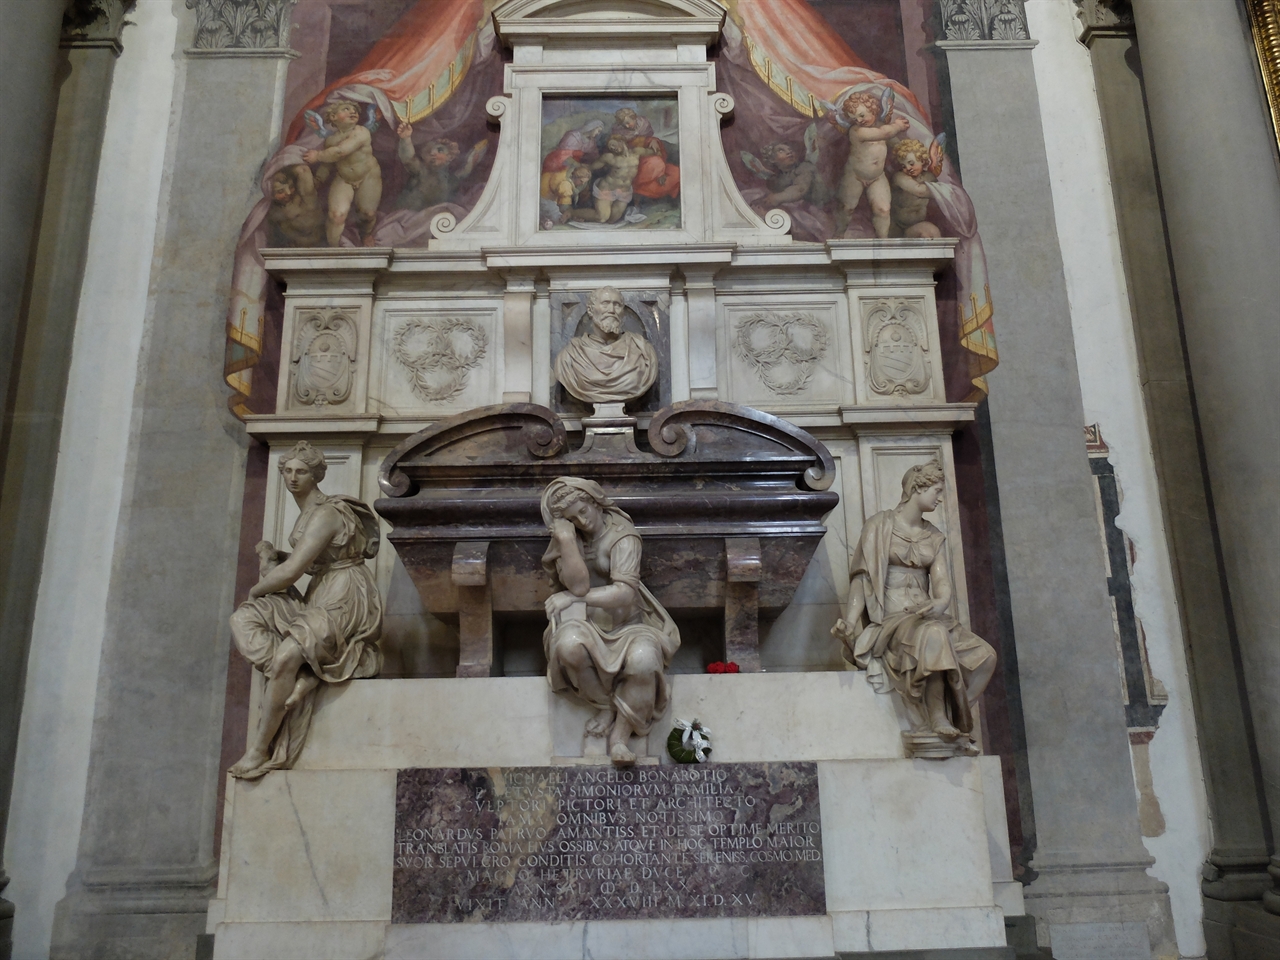 산타 크로체 성당 안의 미켈란젤로의 무덤입니다. 산타 크로체 성당에는 이외에도 갈릴레이, 마키아벨리, 롯시니 등 피렌체가 낳은 위대한 인물들의 무덤과 단테의 가묘가 있습니다. 